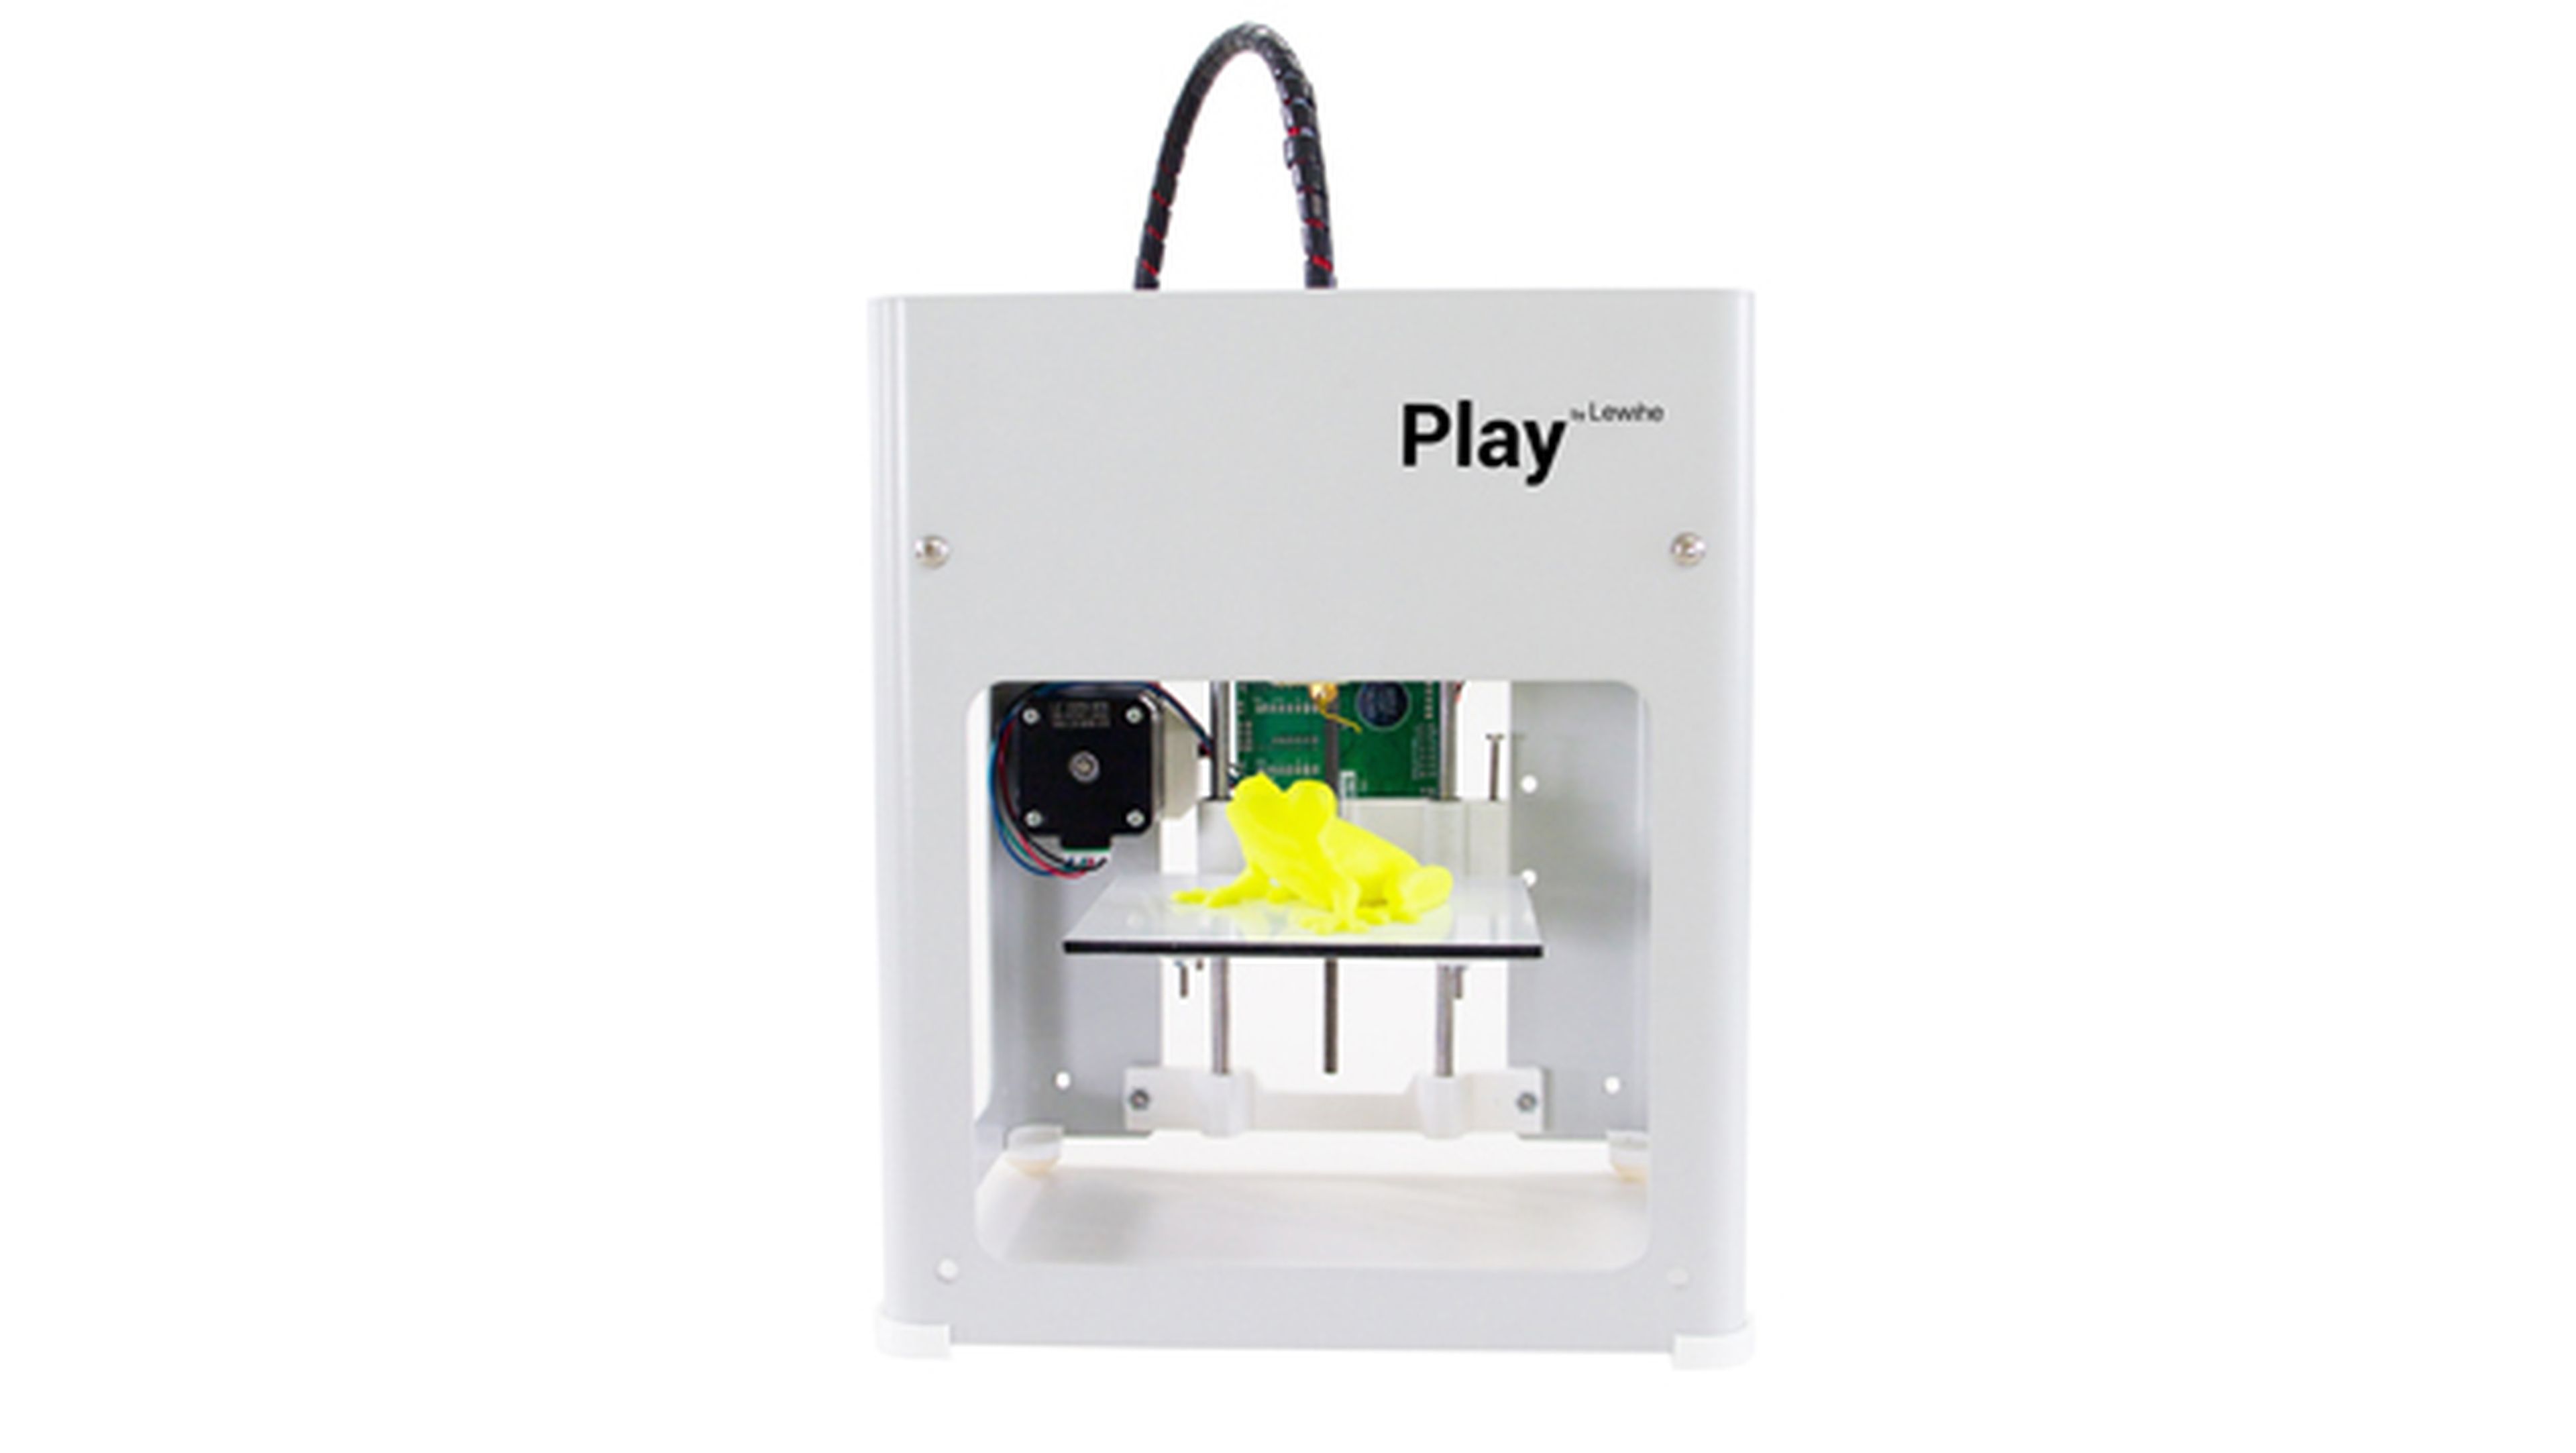 Lewihe Play, una impresora 3D española por sólo 69 euros